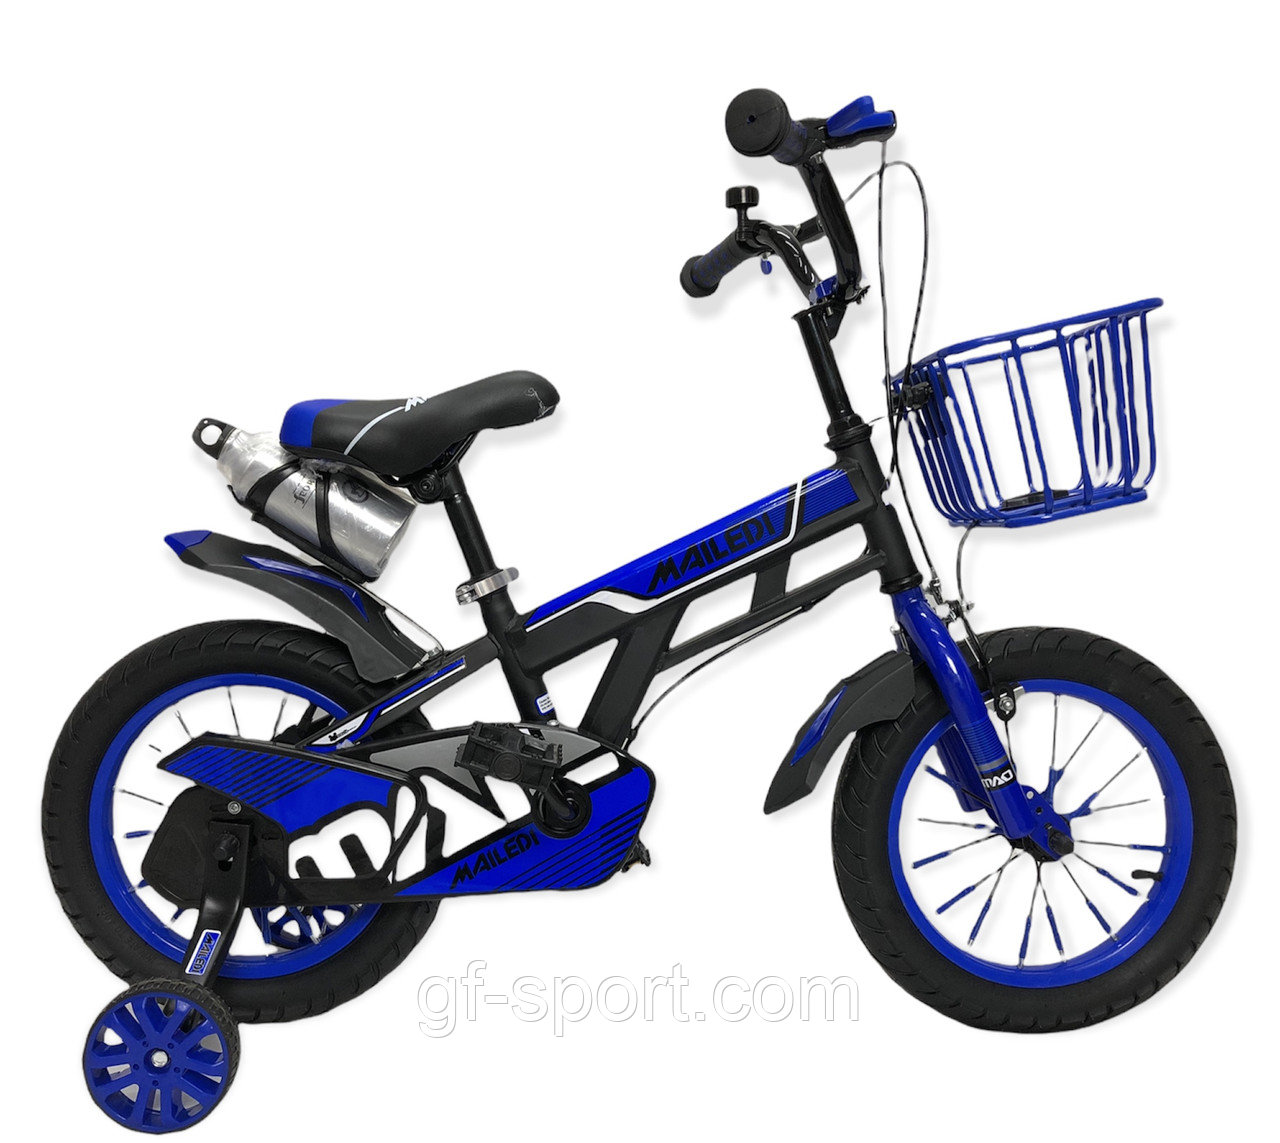 Велосипед Mailedi синий оригинал детский с холостым ходом 14 размер (506-14)